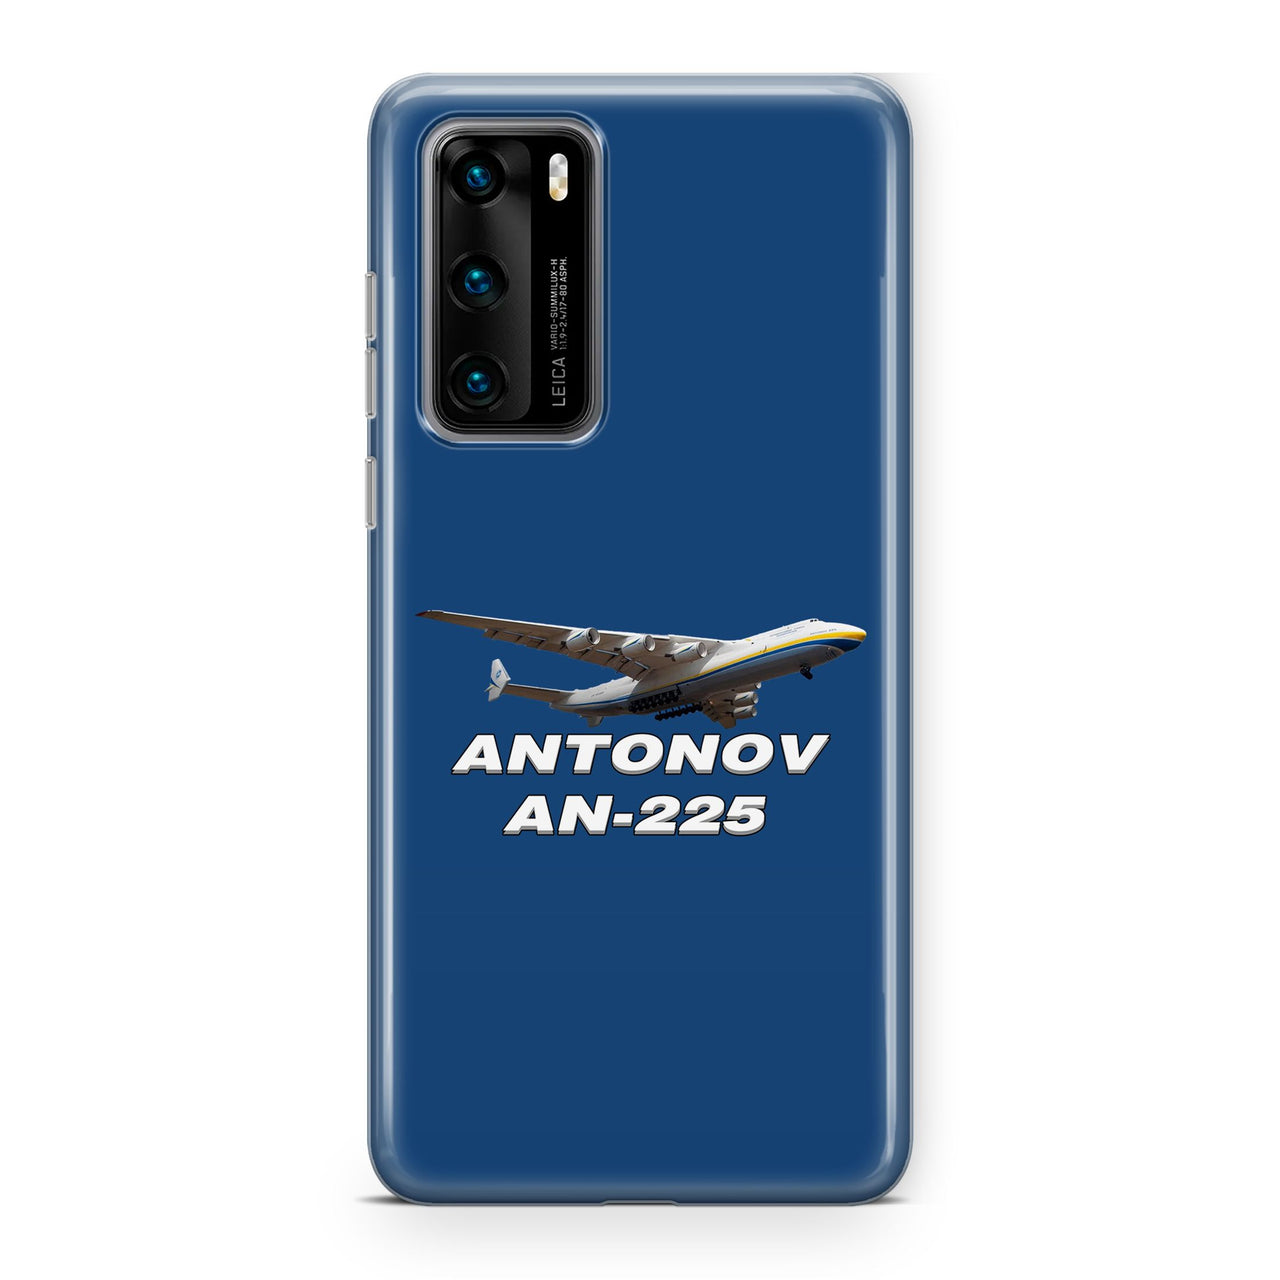 Antonov AN-225 (15) Designed Huawei Cases